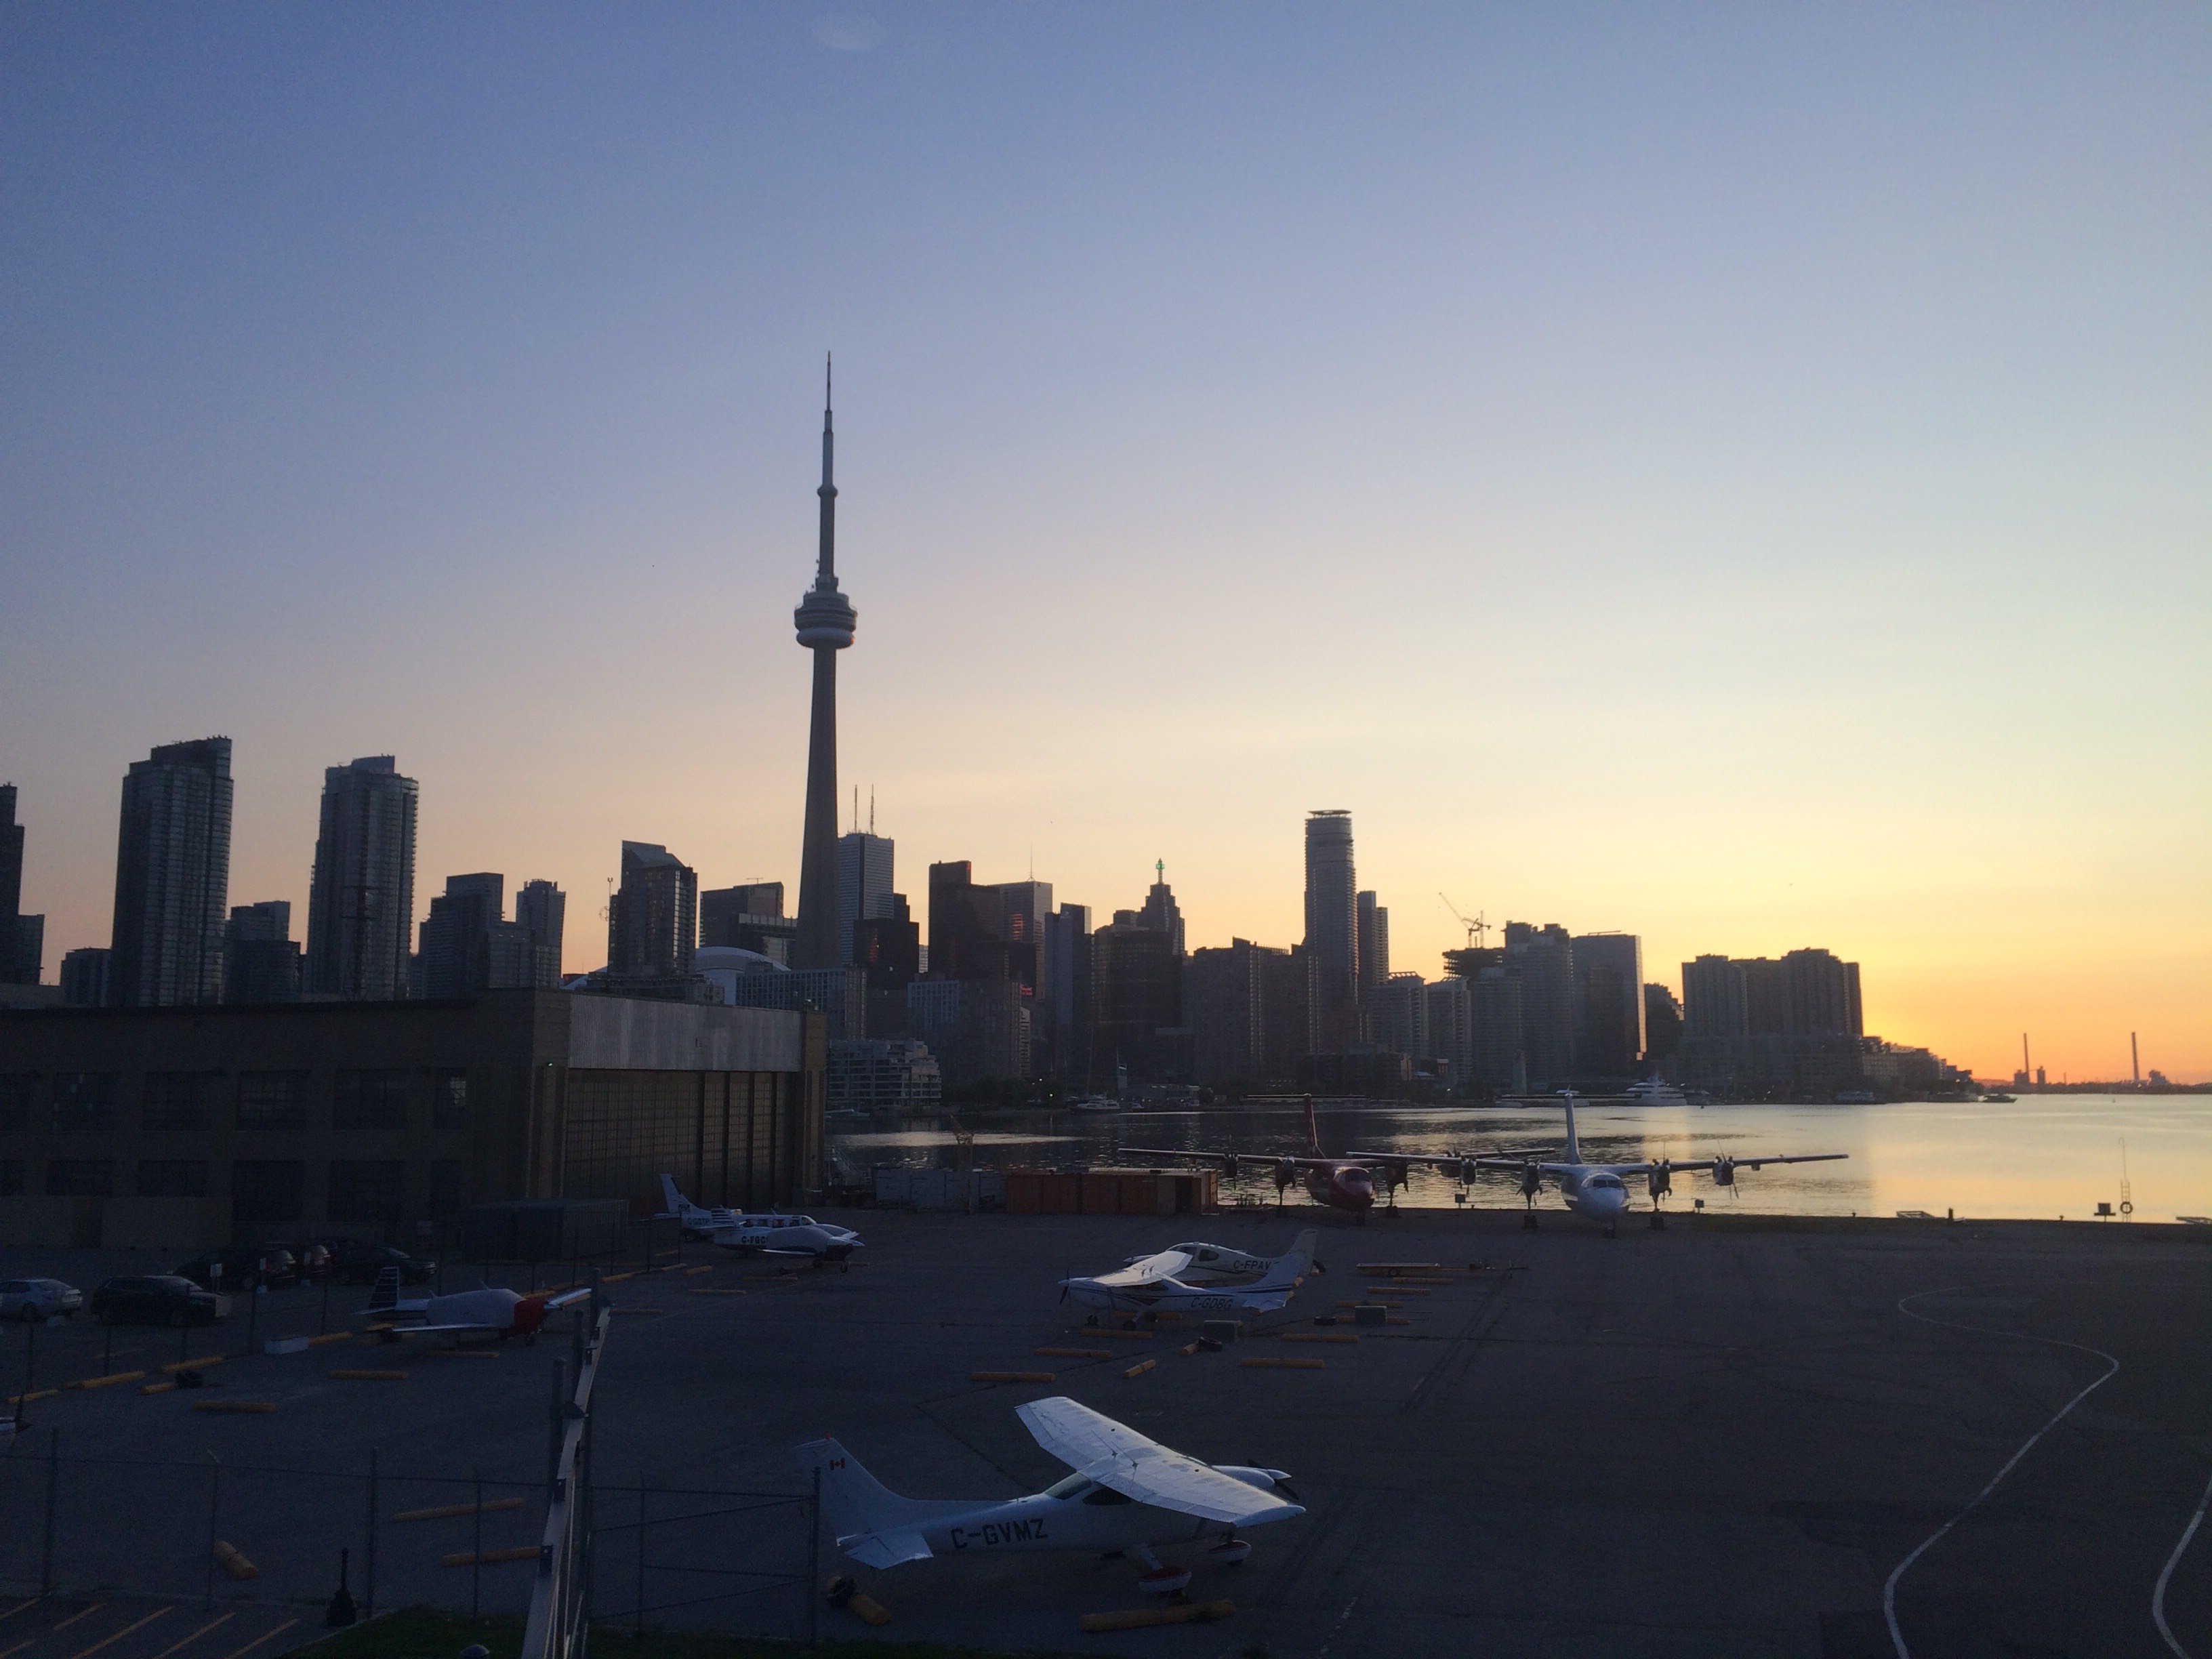 A sunrise in Toronto